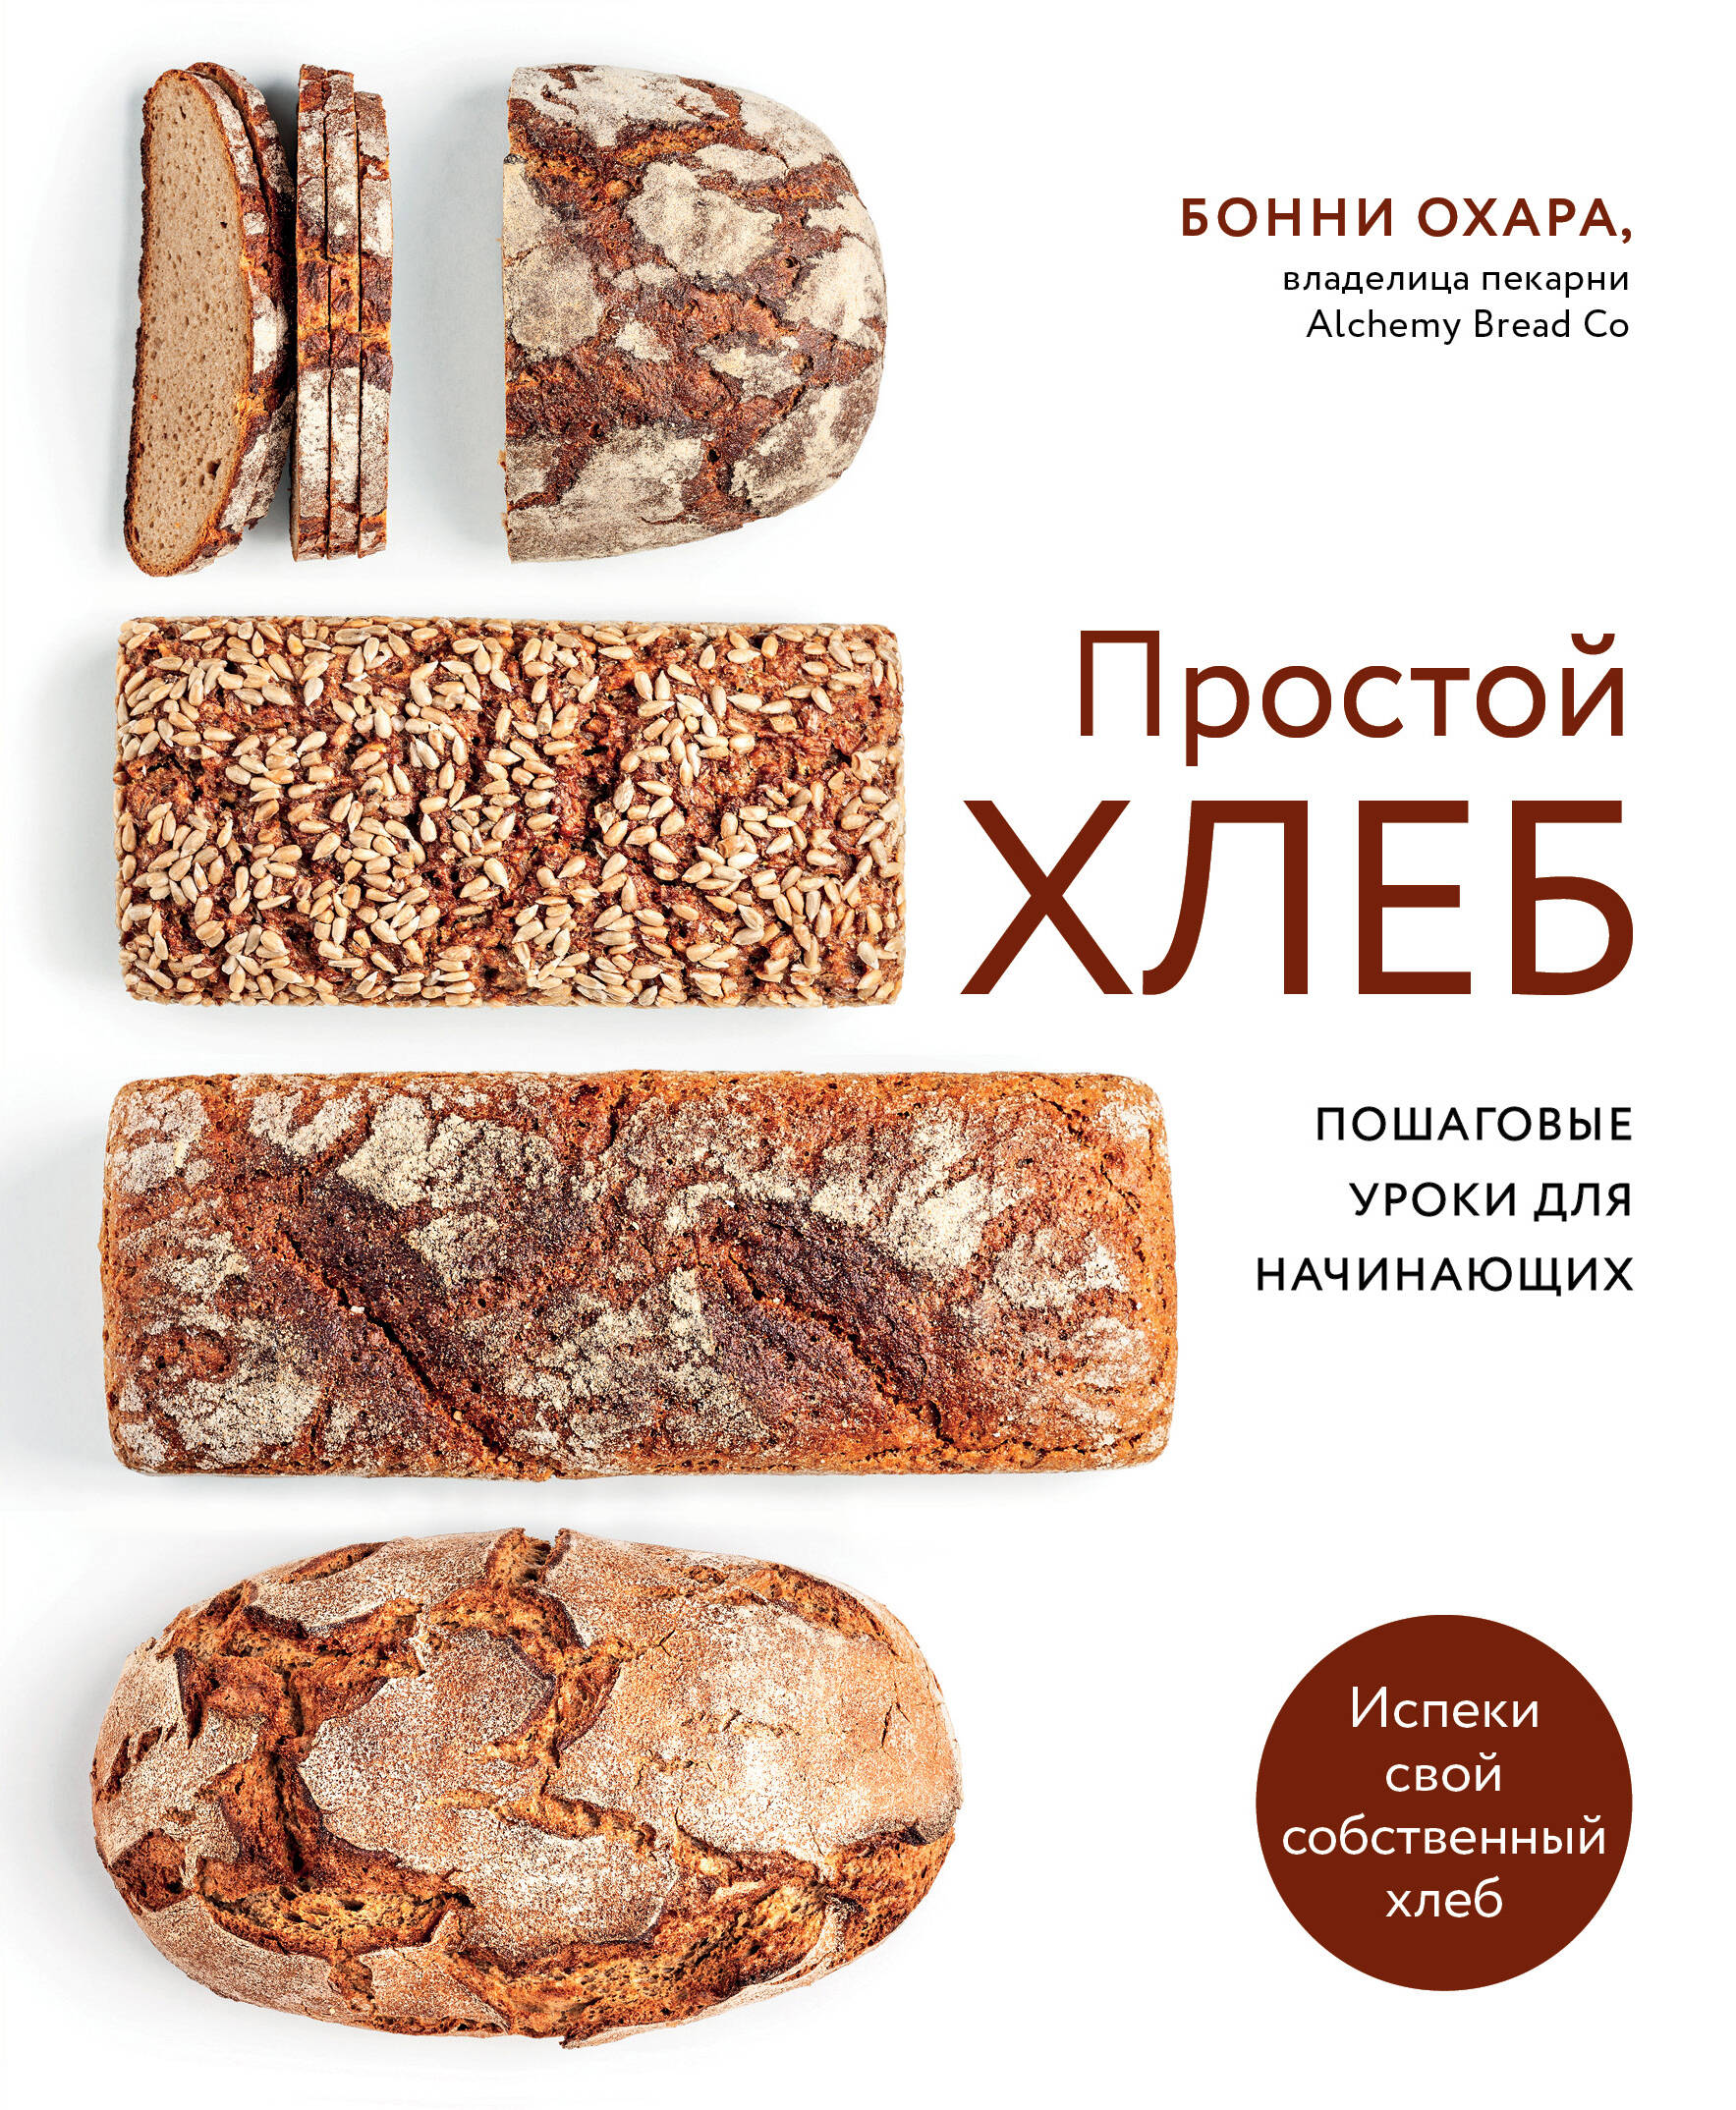 Охара Бонни Простой хлеб Пошаговые уроки для начинающих соломка жуковский хлеб сдобная с солью 200 г